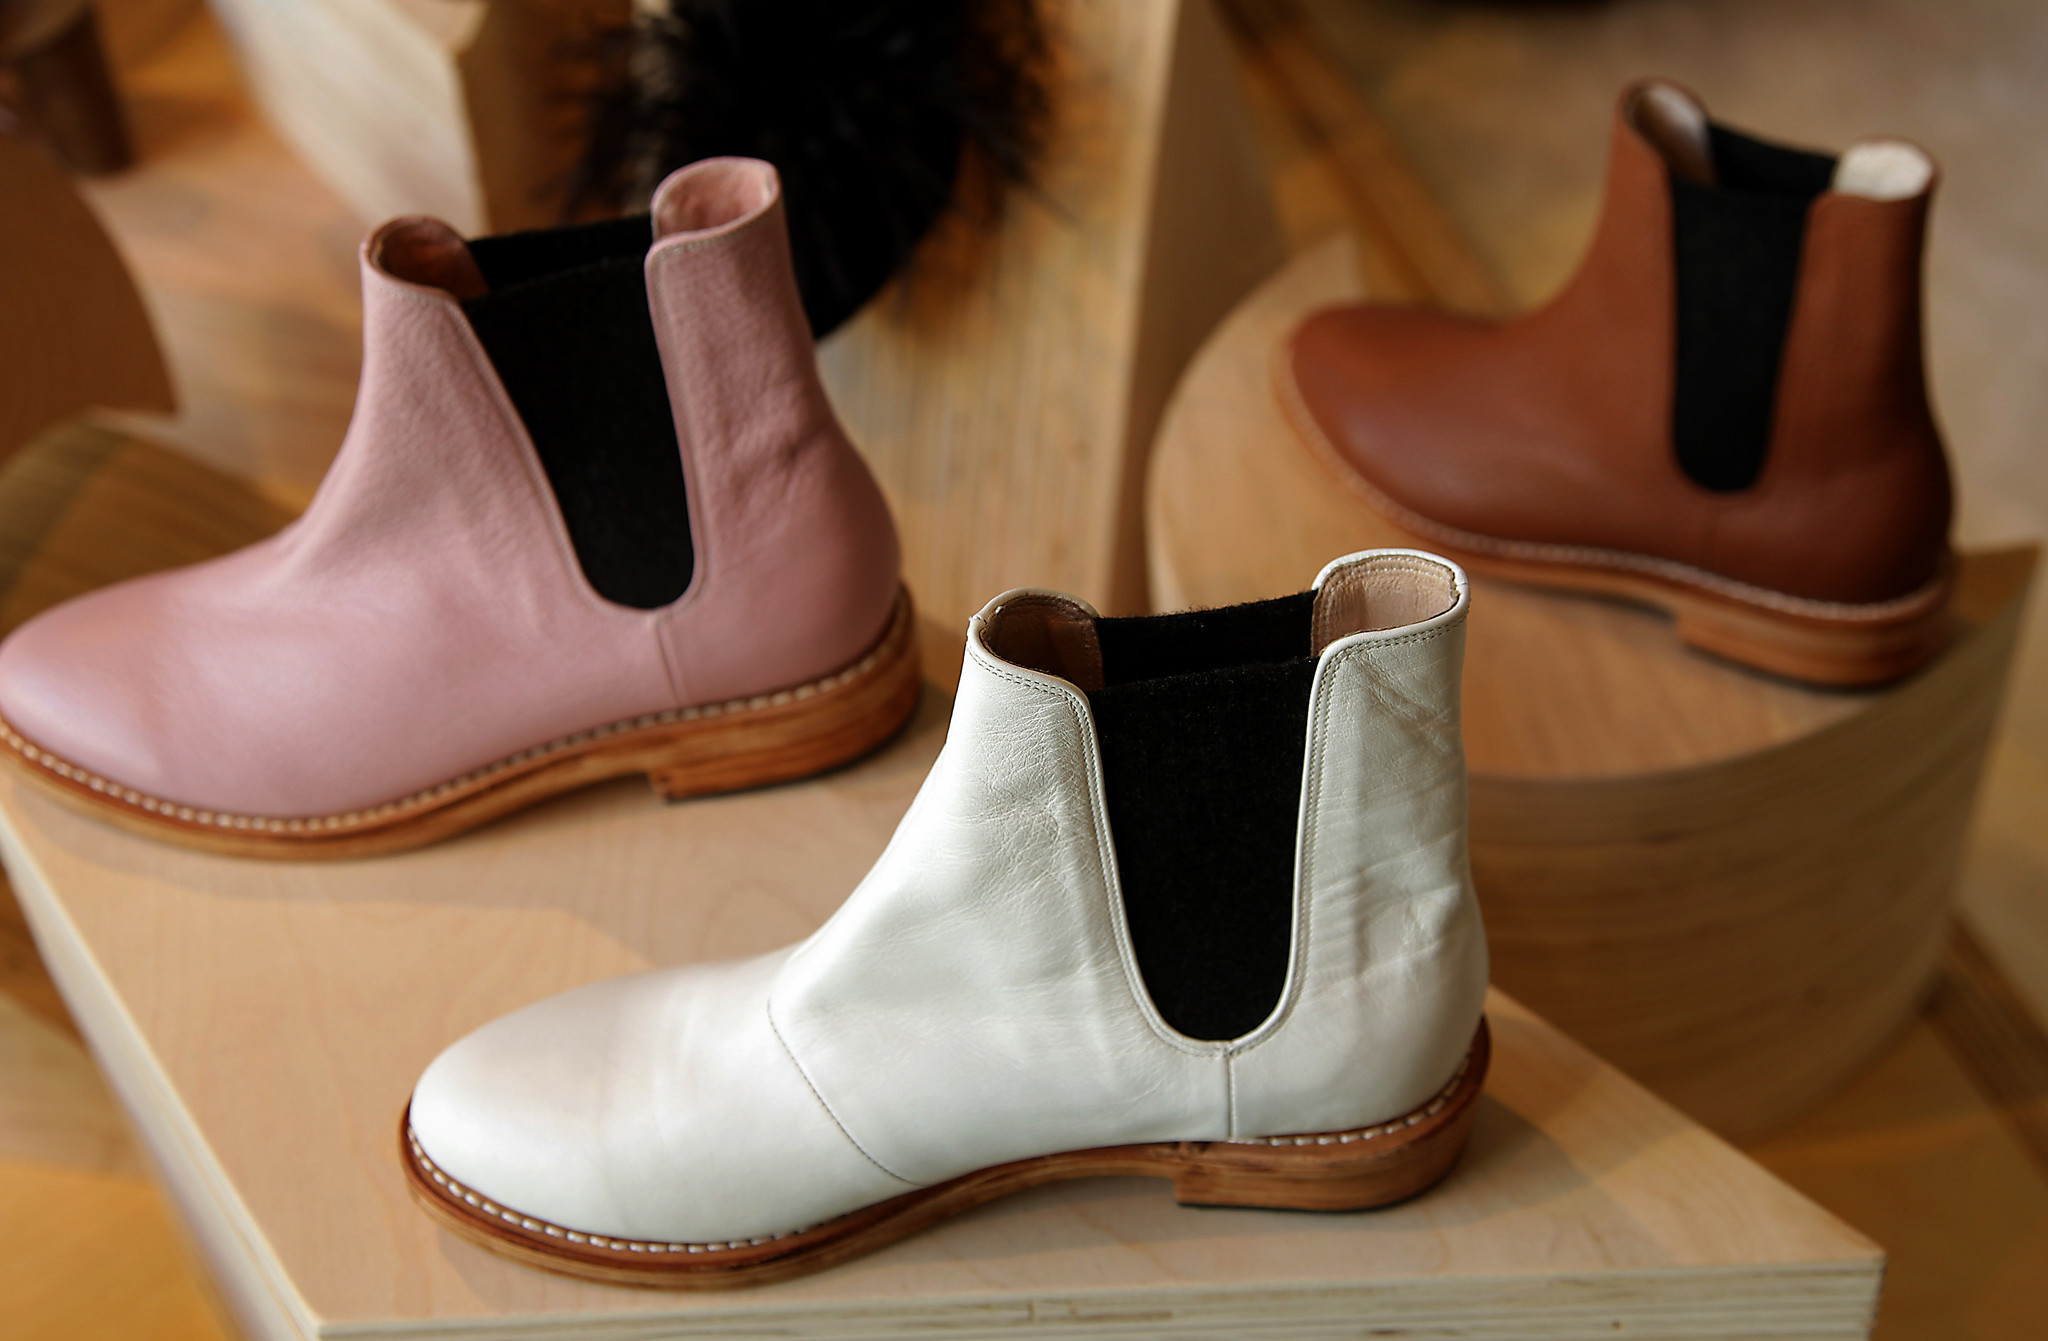 Booties from Ventura-based footwear designer Charlotte Stone.